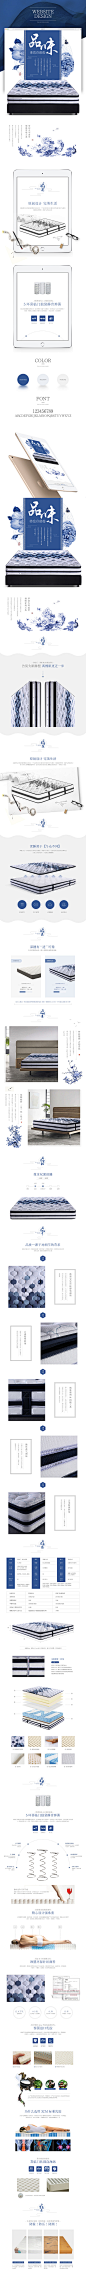 中国风 青花瓷风格床垫详情页设计 电商设计